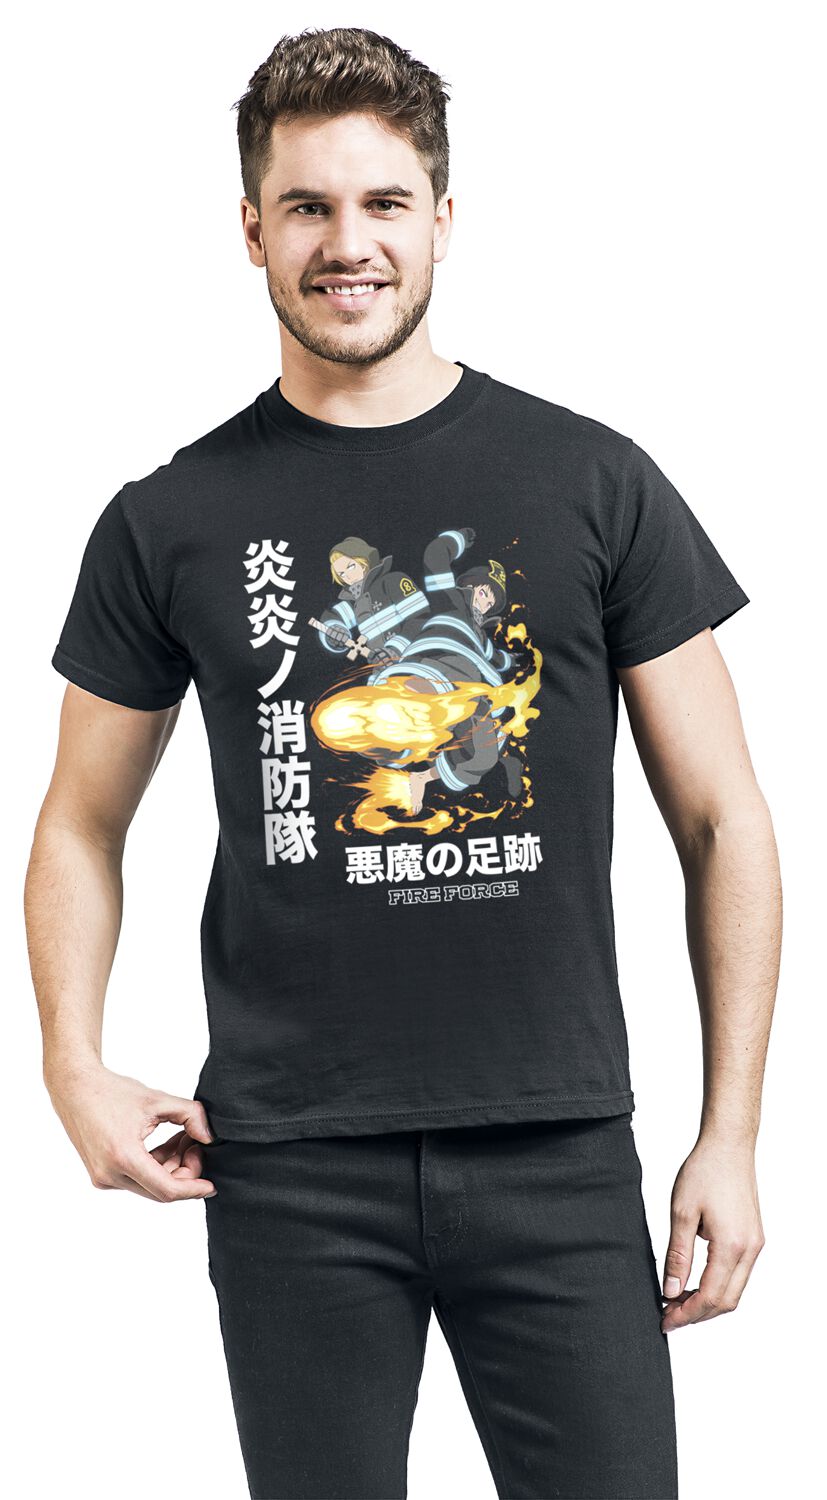 Fire Force - Anime T-Shirt - Devil Footprints - S bis XL - für Männer - Größe M - schwarz  - Lizenzierter Fanartikel